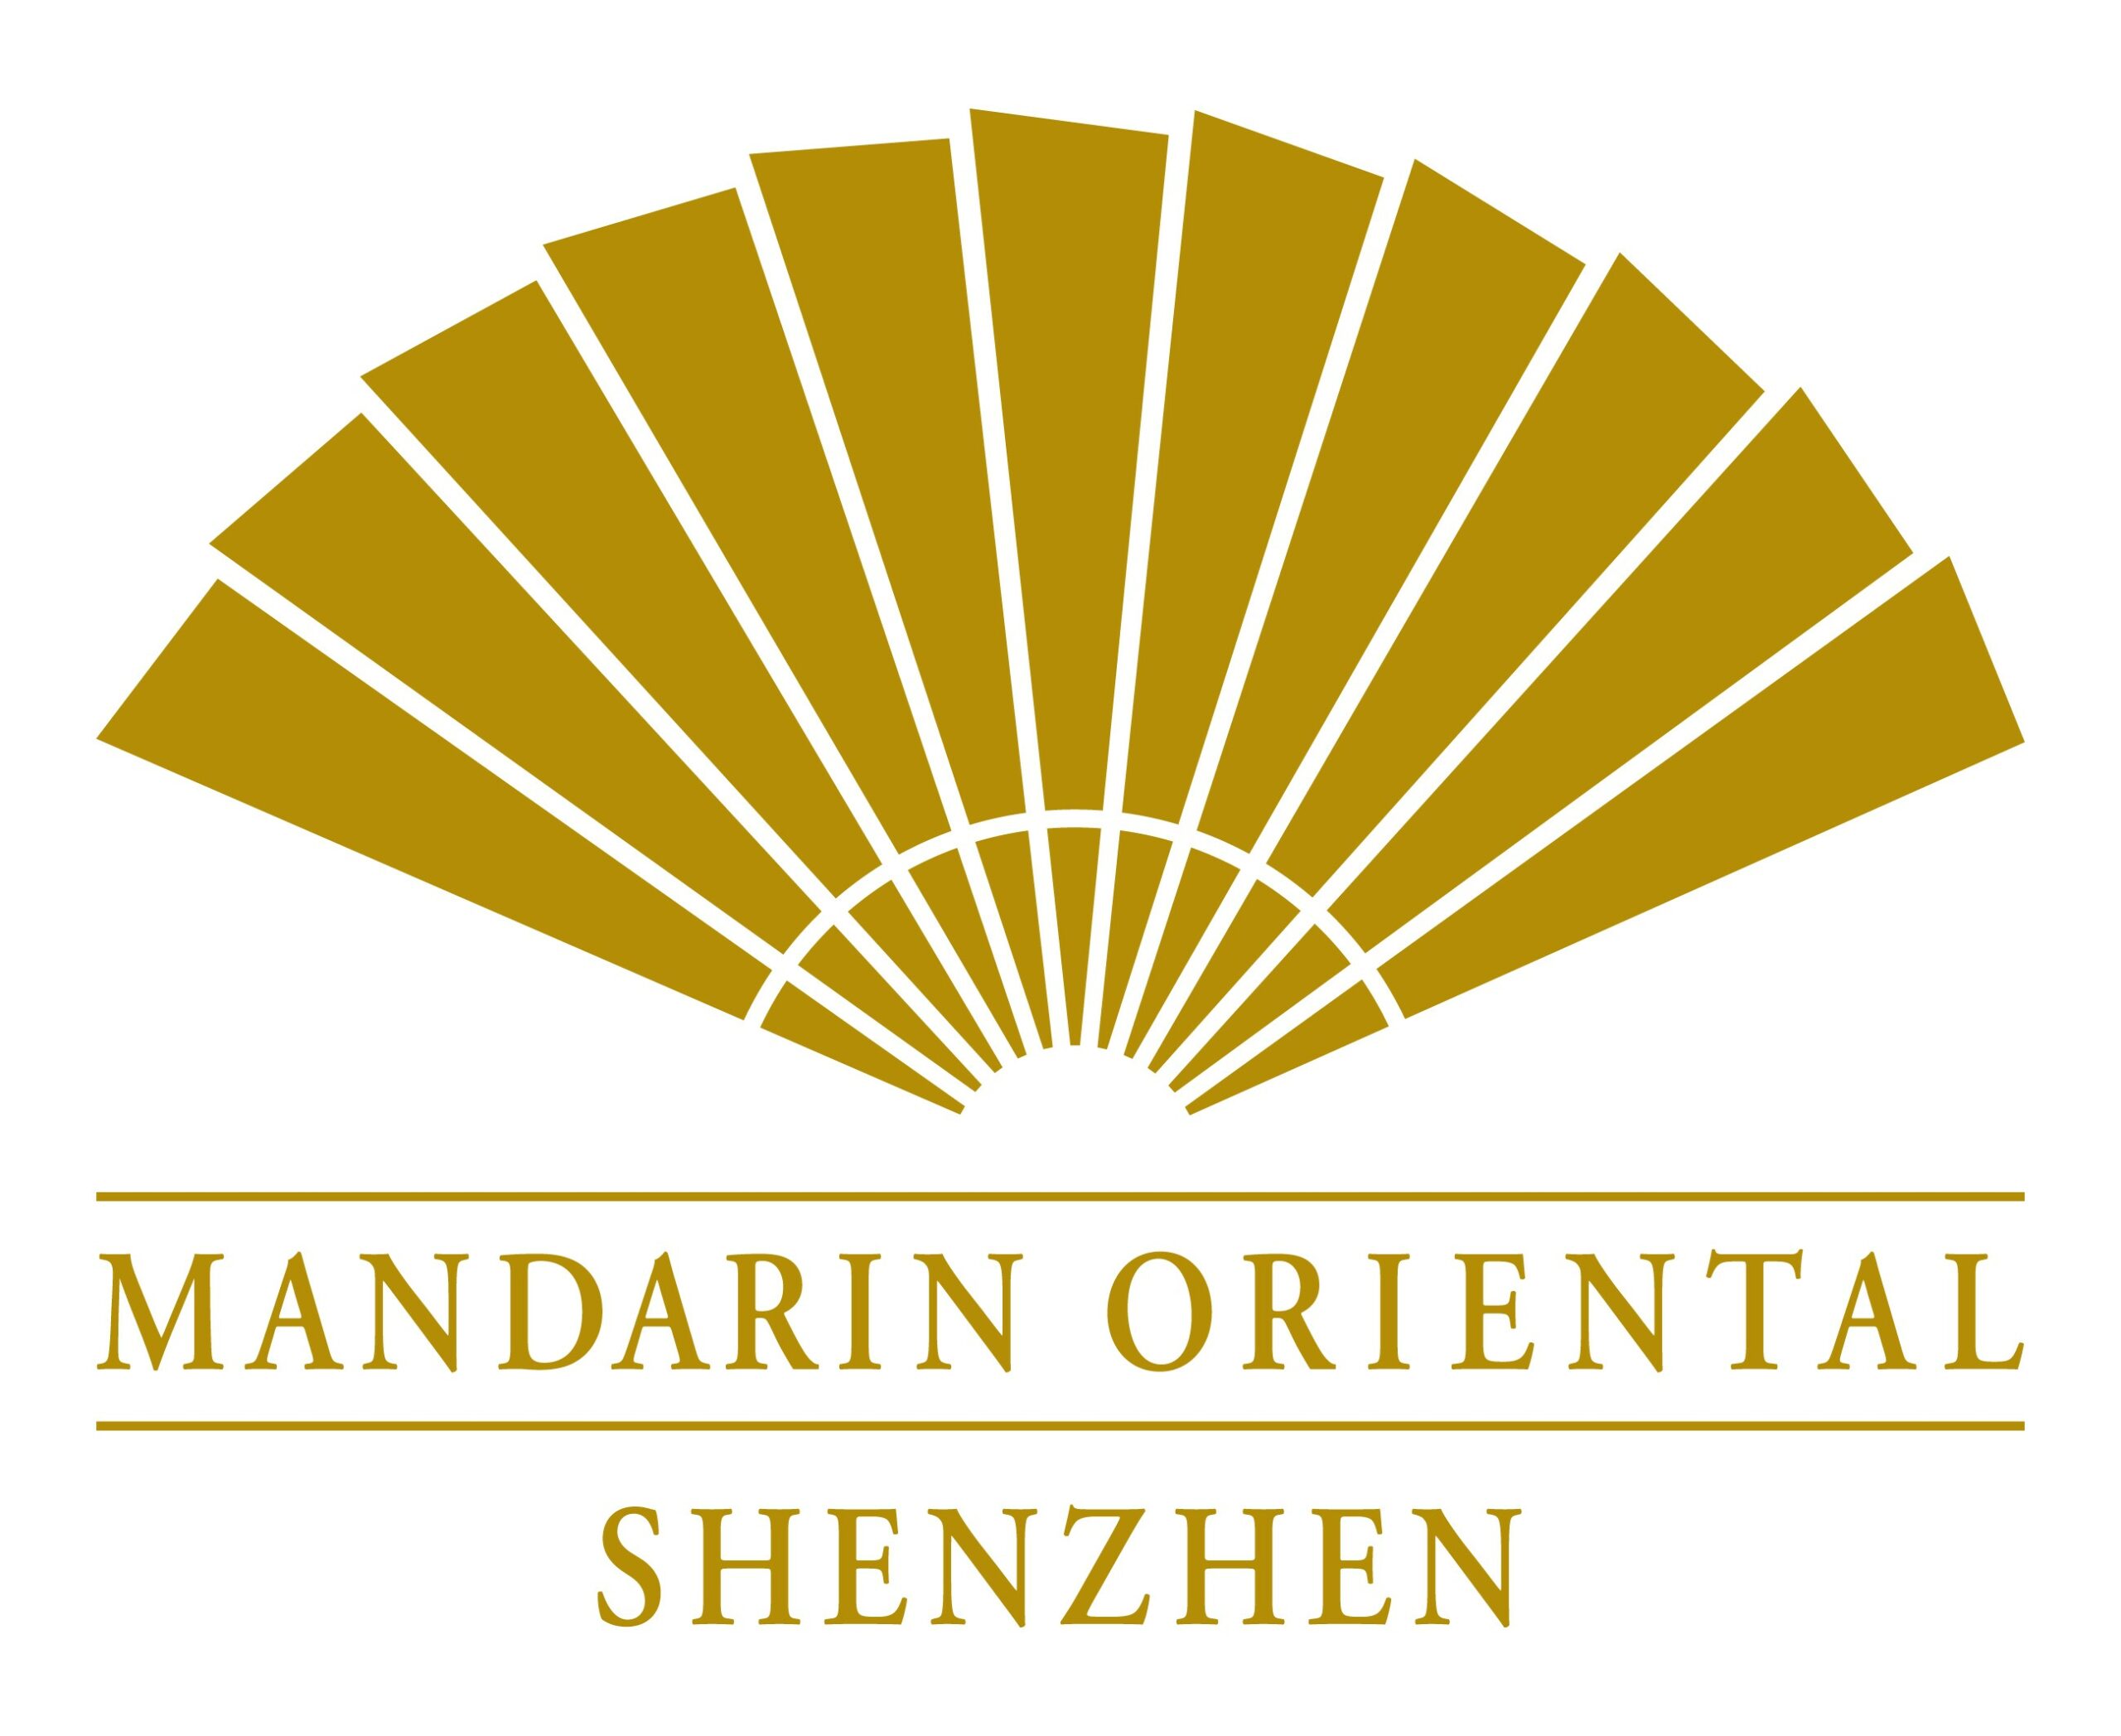 Featured image for “Mandarin Oriental, Shenzhen”